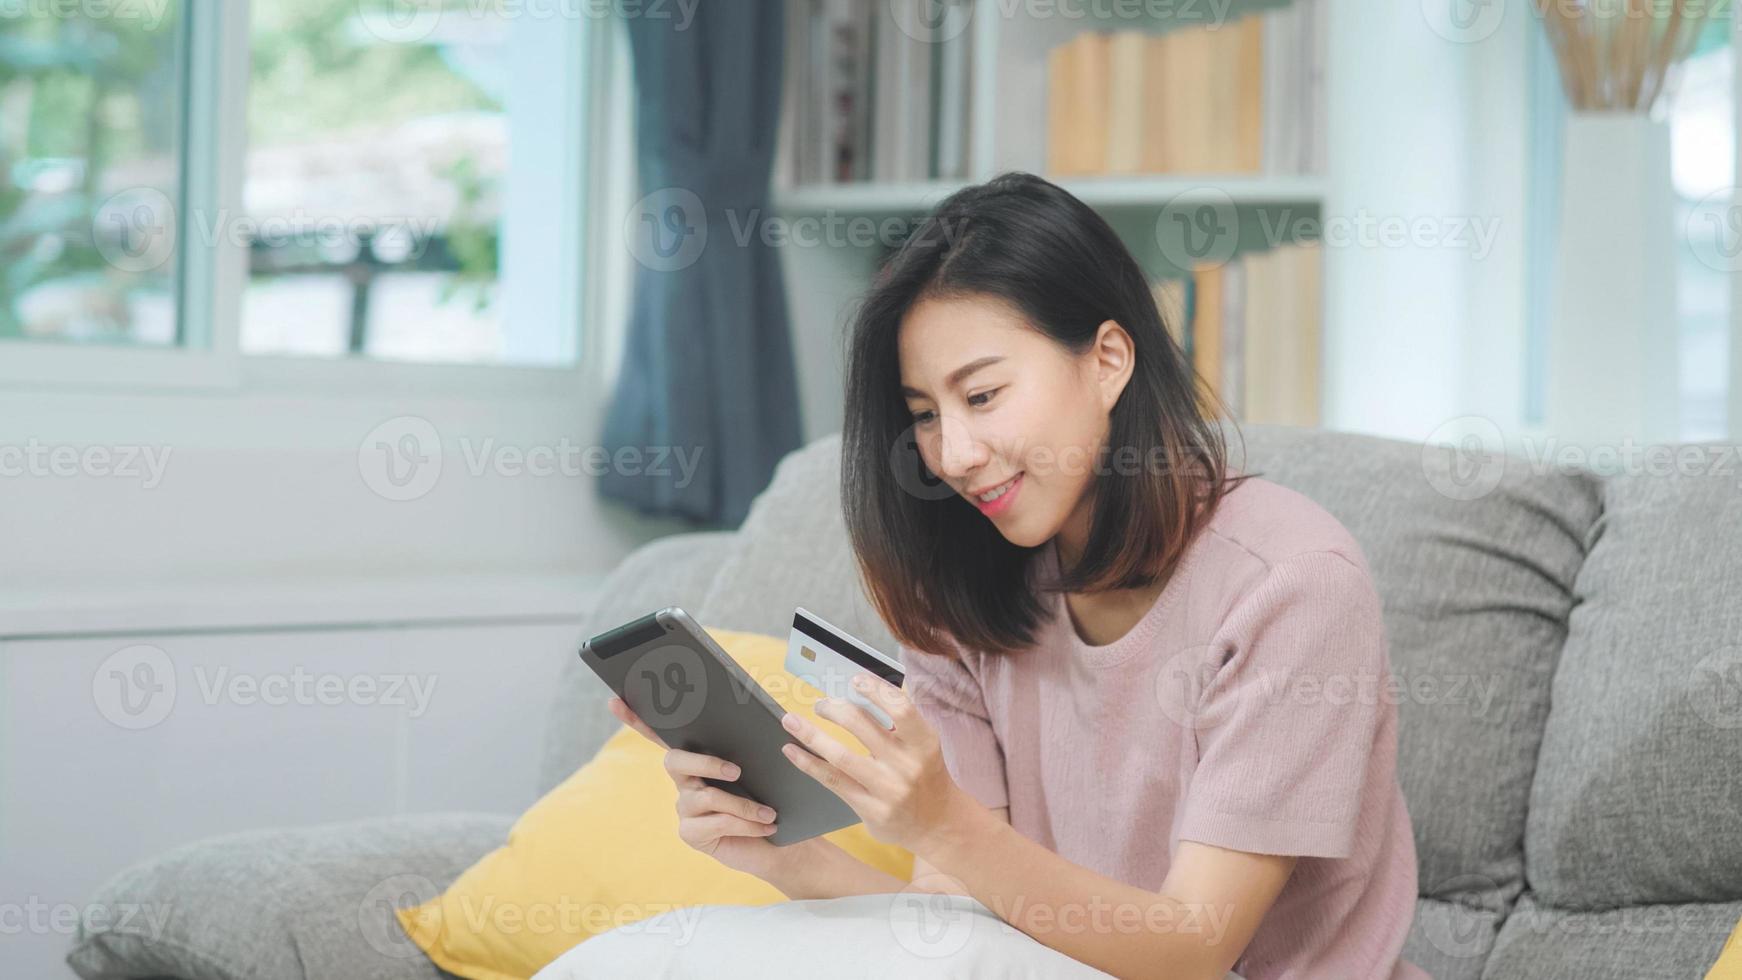 ung leende asiatisk kvinna som använder surfplatta och köper onlineshopping med kreditkort medan hon ligger på soffan när hon kopplar av i vardagsrummet hemma. livsstil latin och spansktalande etnicitet kvinnor hemma koncept. foto